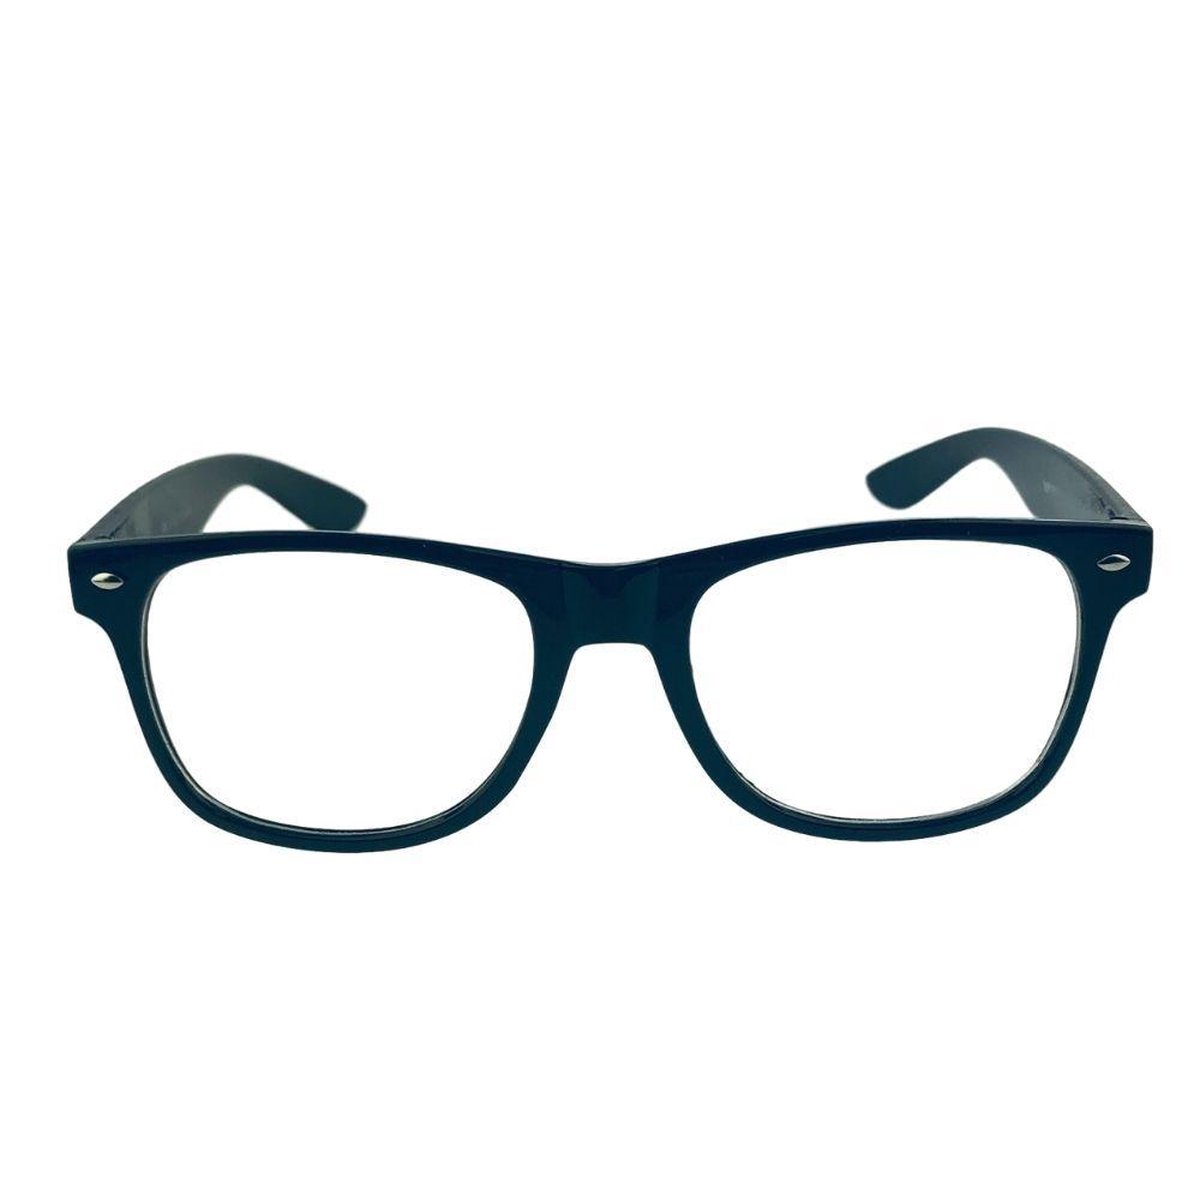 Orange85 bril zonder sterkte – Zwart - Nerdbril - Heren - Dames - Zwarte bril - Orange85